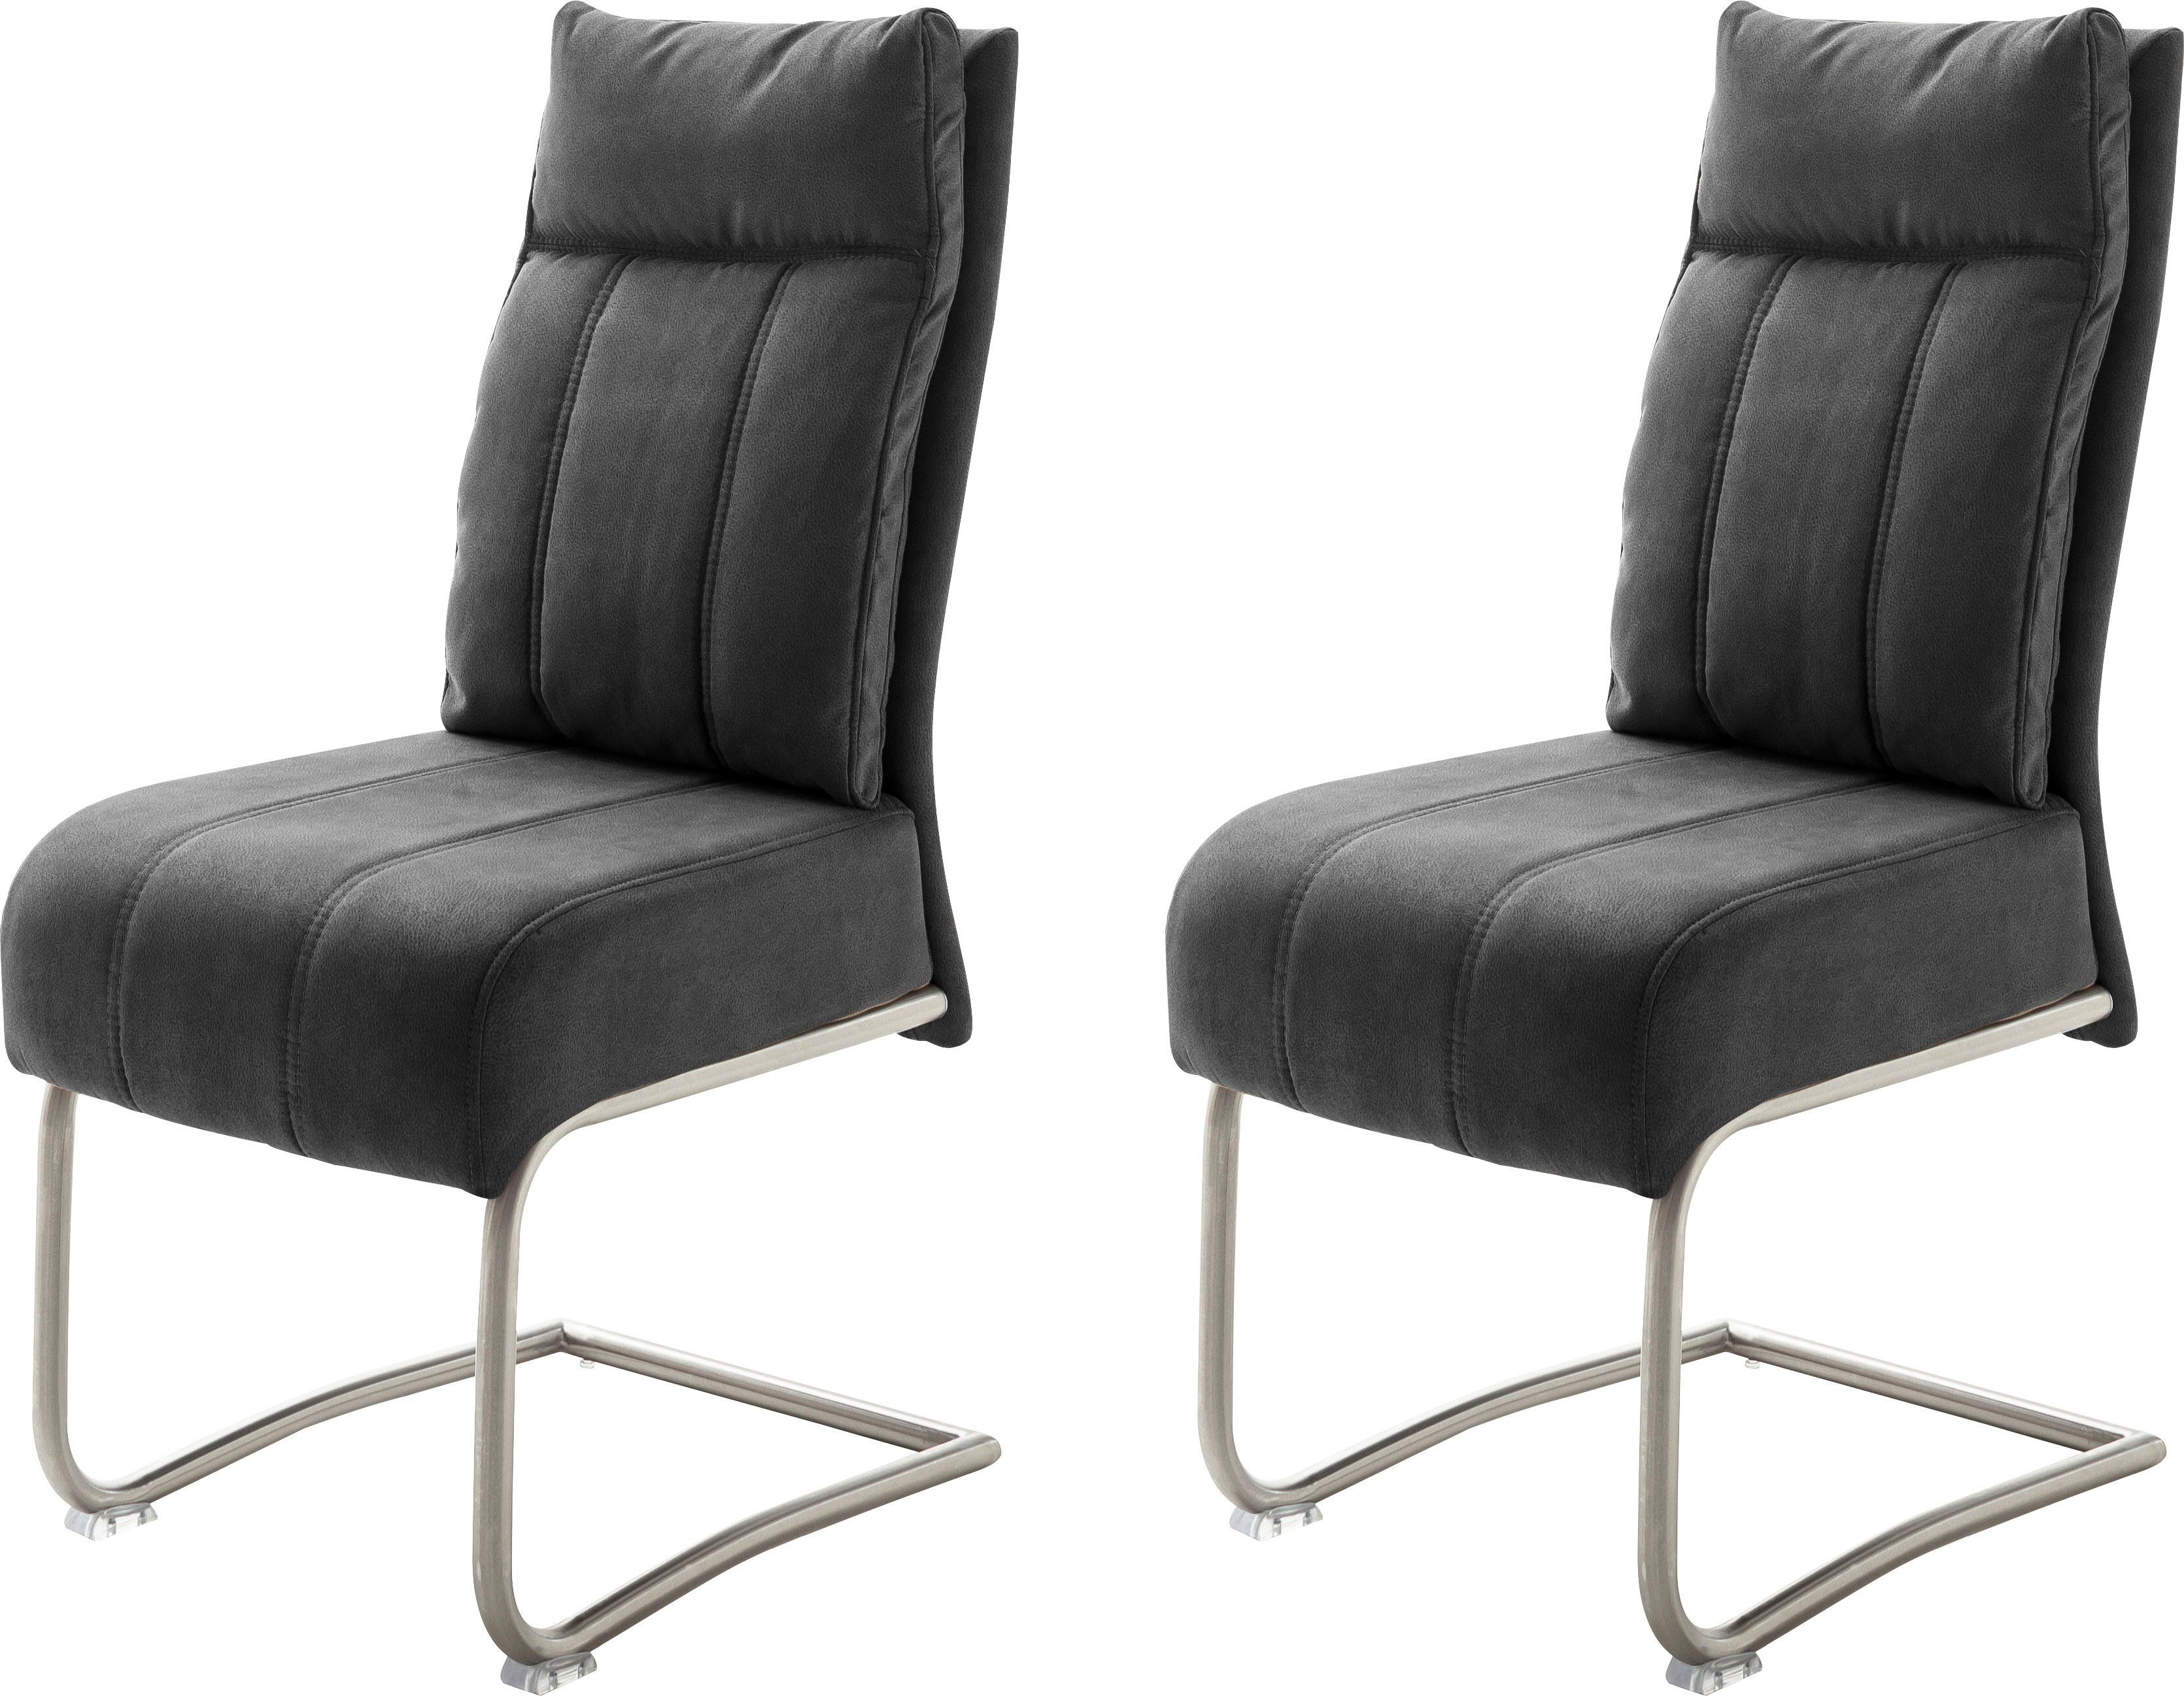 MCA furniture Vrijdragende stoel Azul met pocketveringskern, stoel tot 120 kg belastbaar (set, 2 stuks)